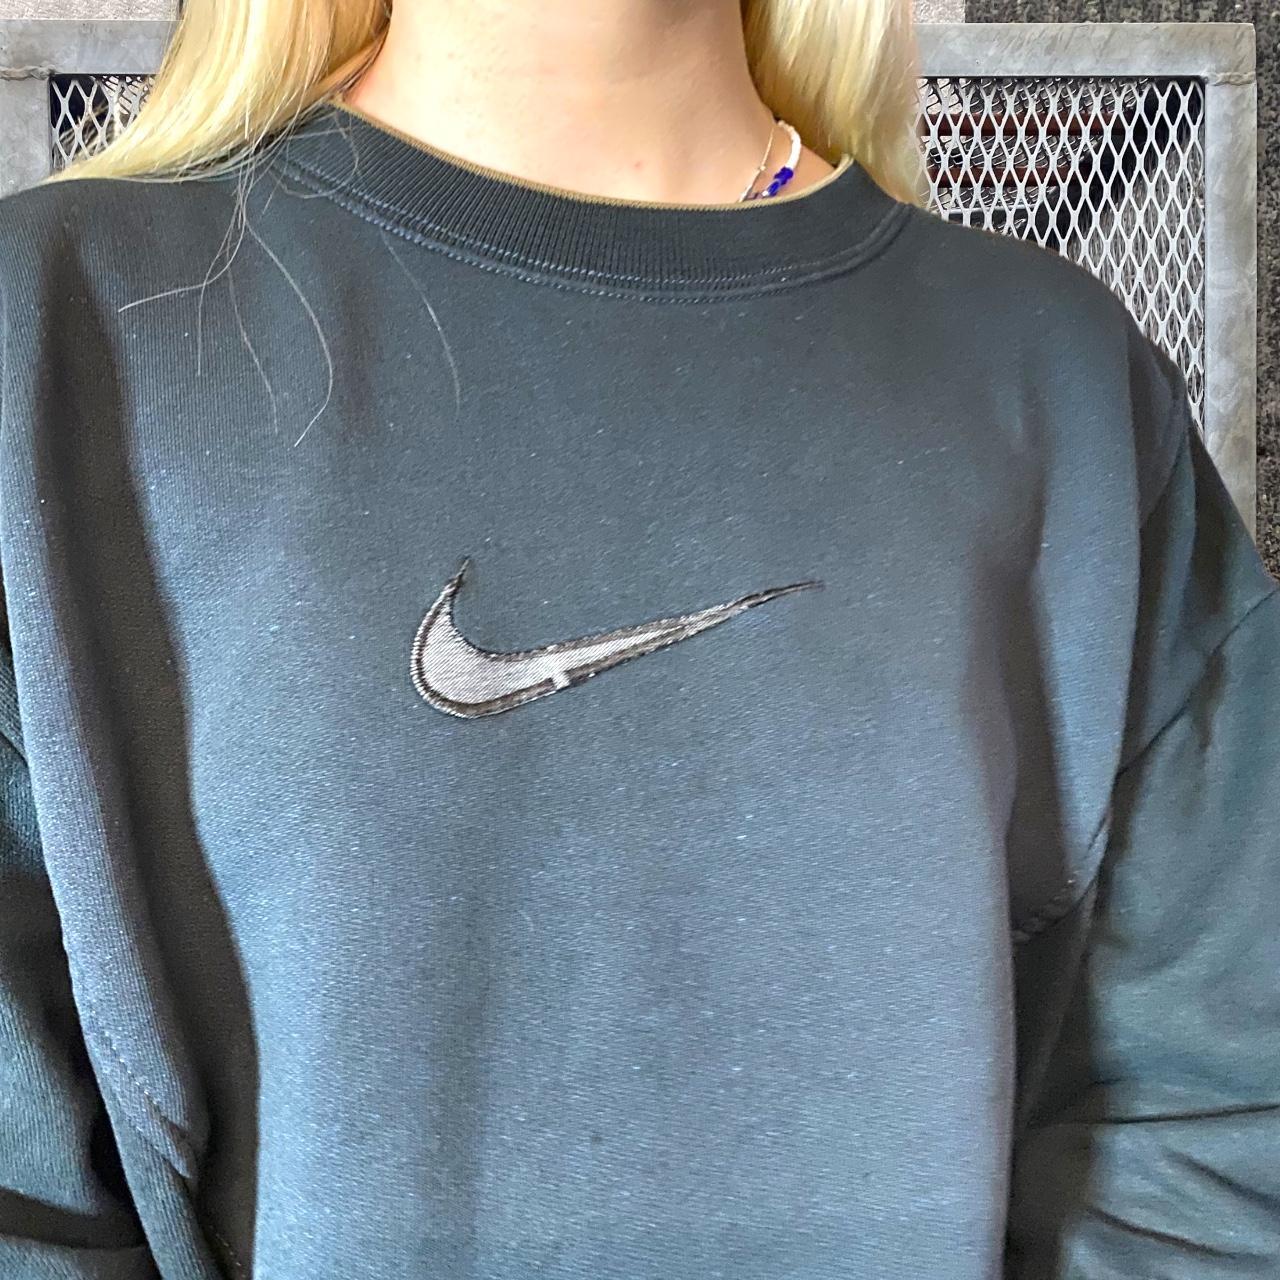 Nike Reworked Vintage Sweatshirt in... - Depop